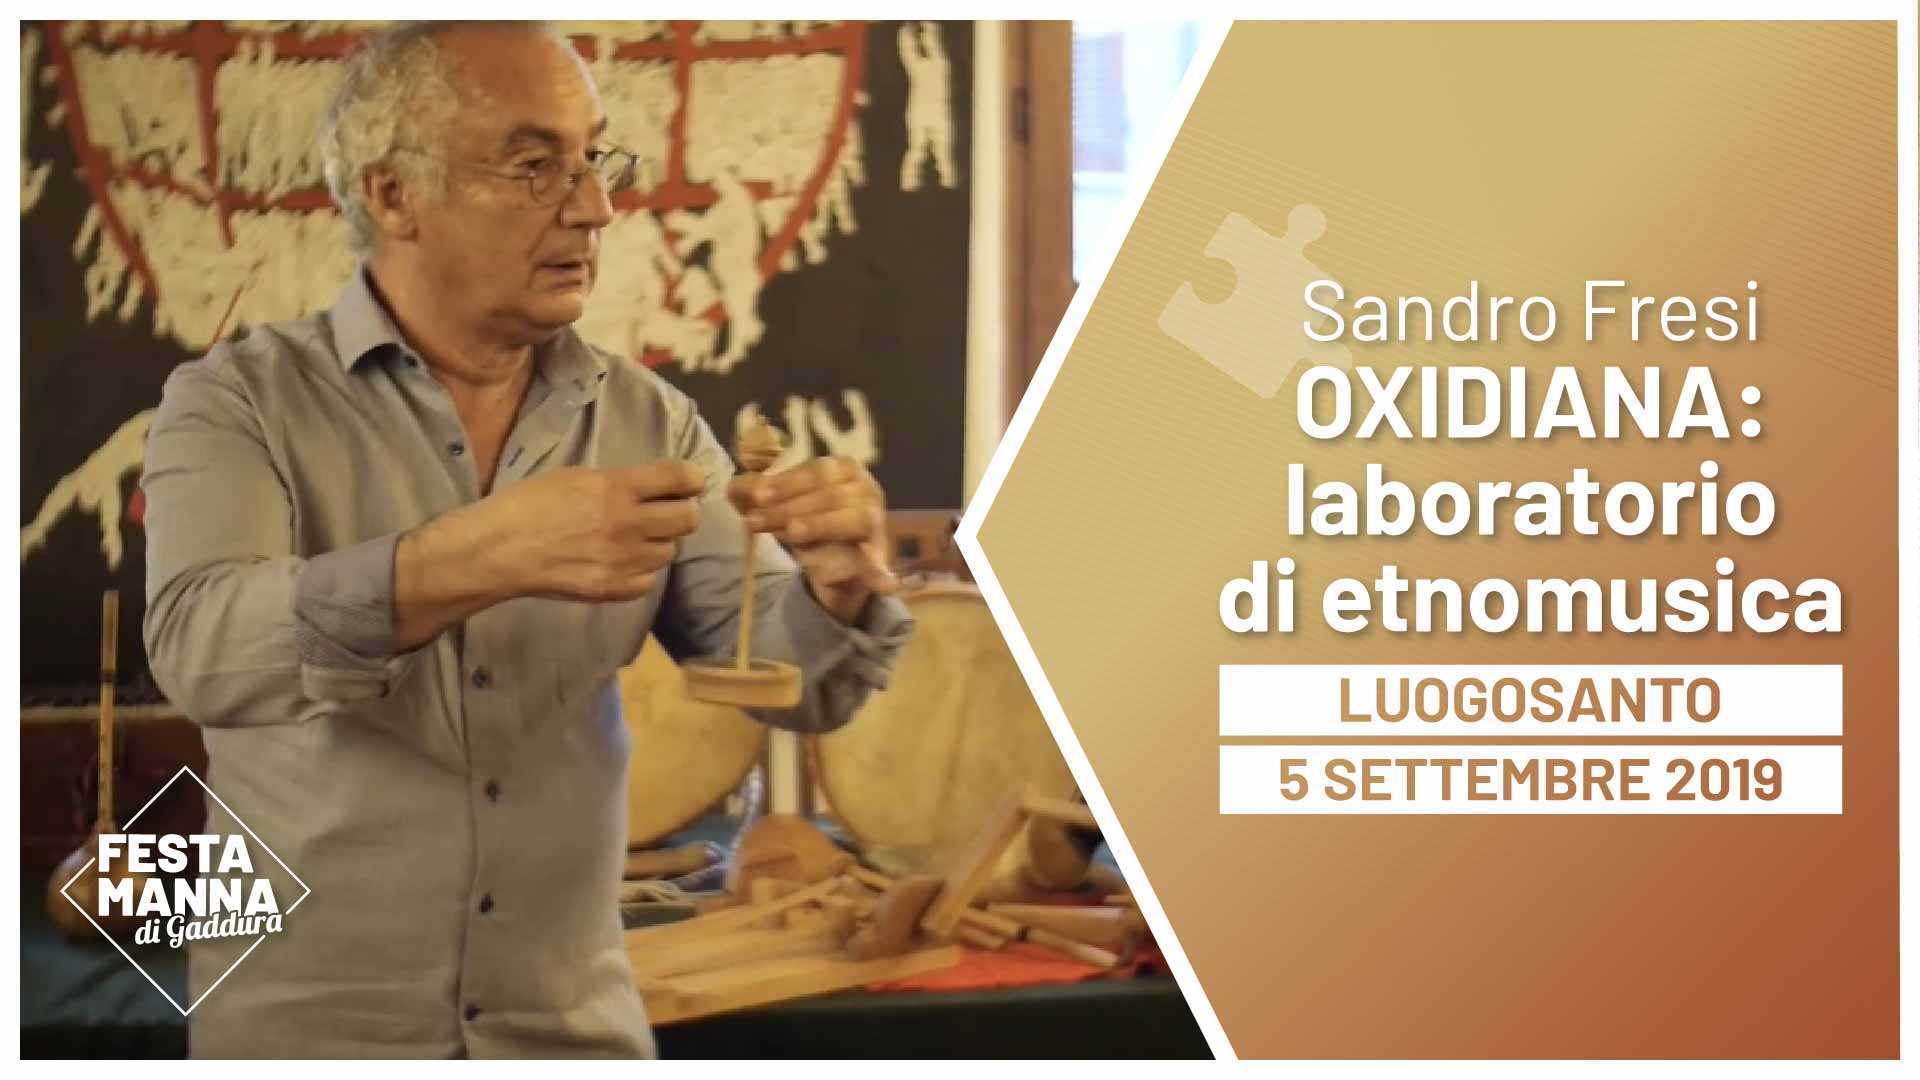 Oxidiana, laboratorio di etnomusica con Sandro Fresi | Festa Manna di Gaddura 2019